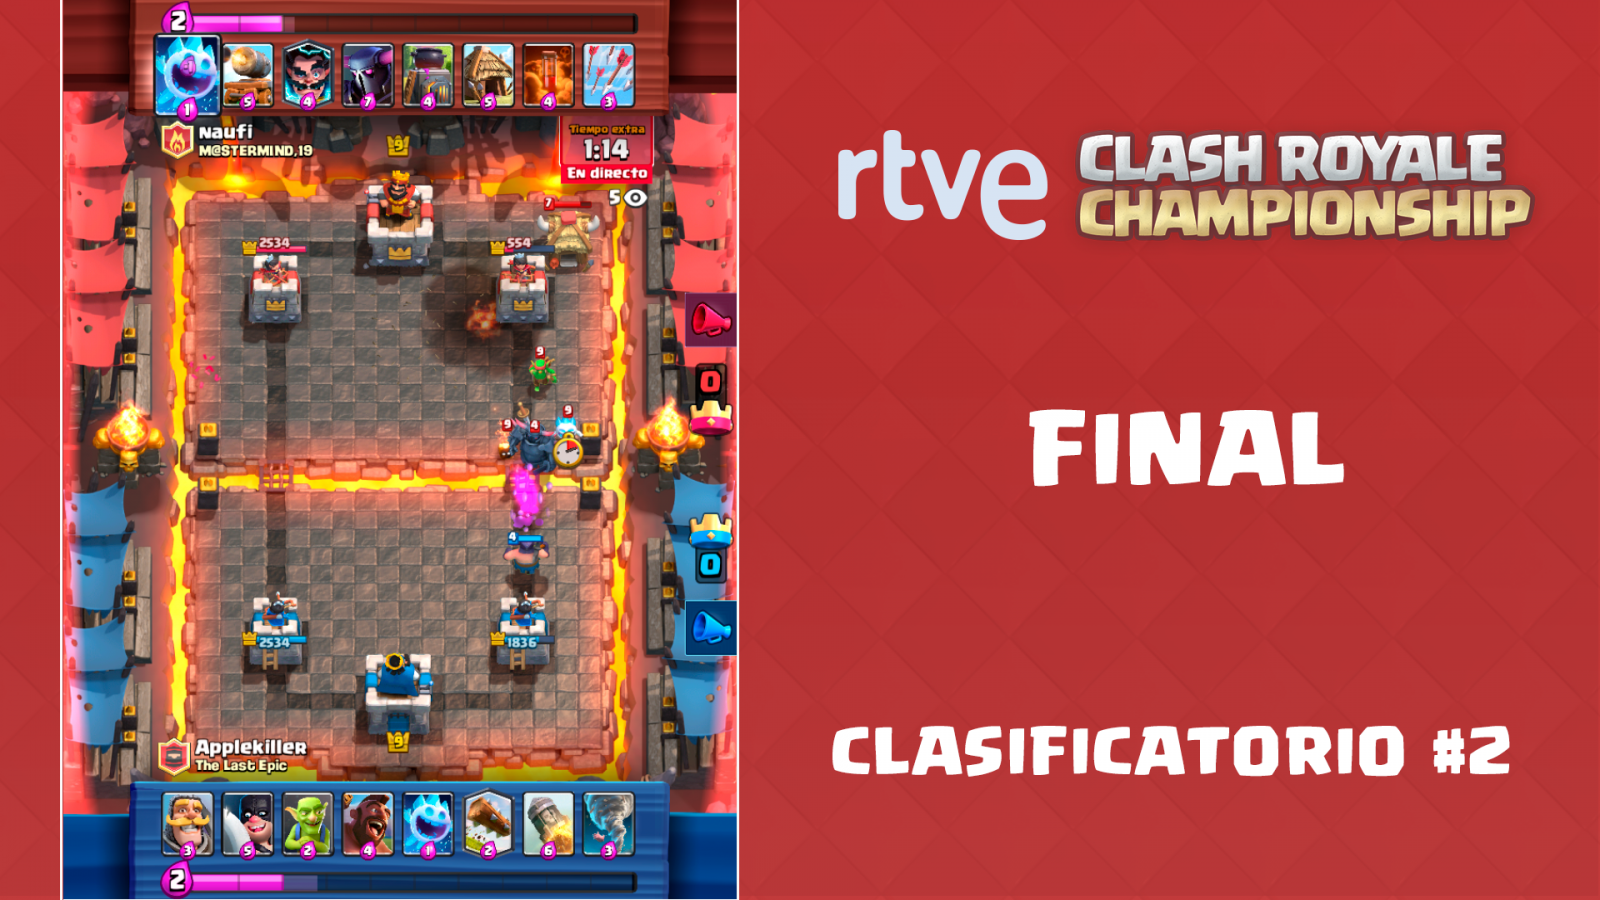 RTVE Clash Royale Championship. Clasificatorio #2 - Final